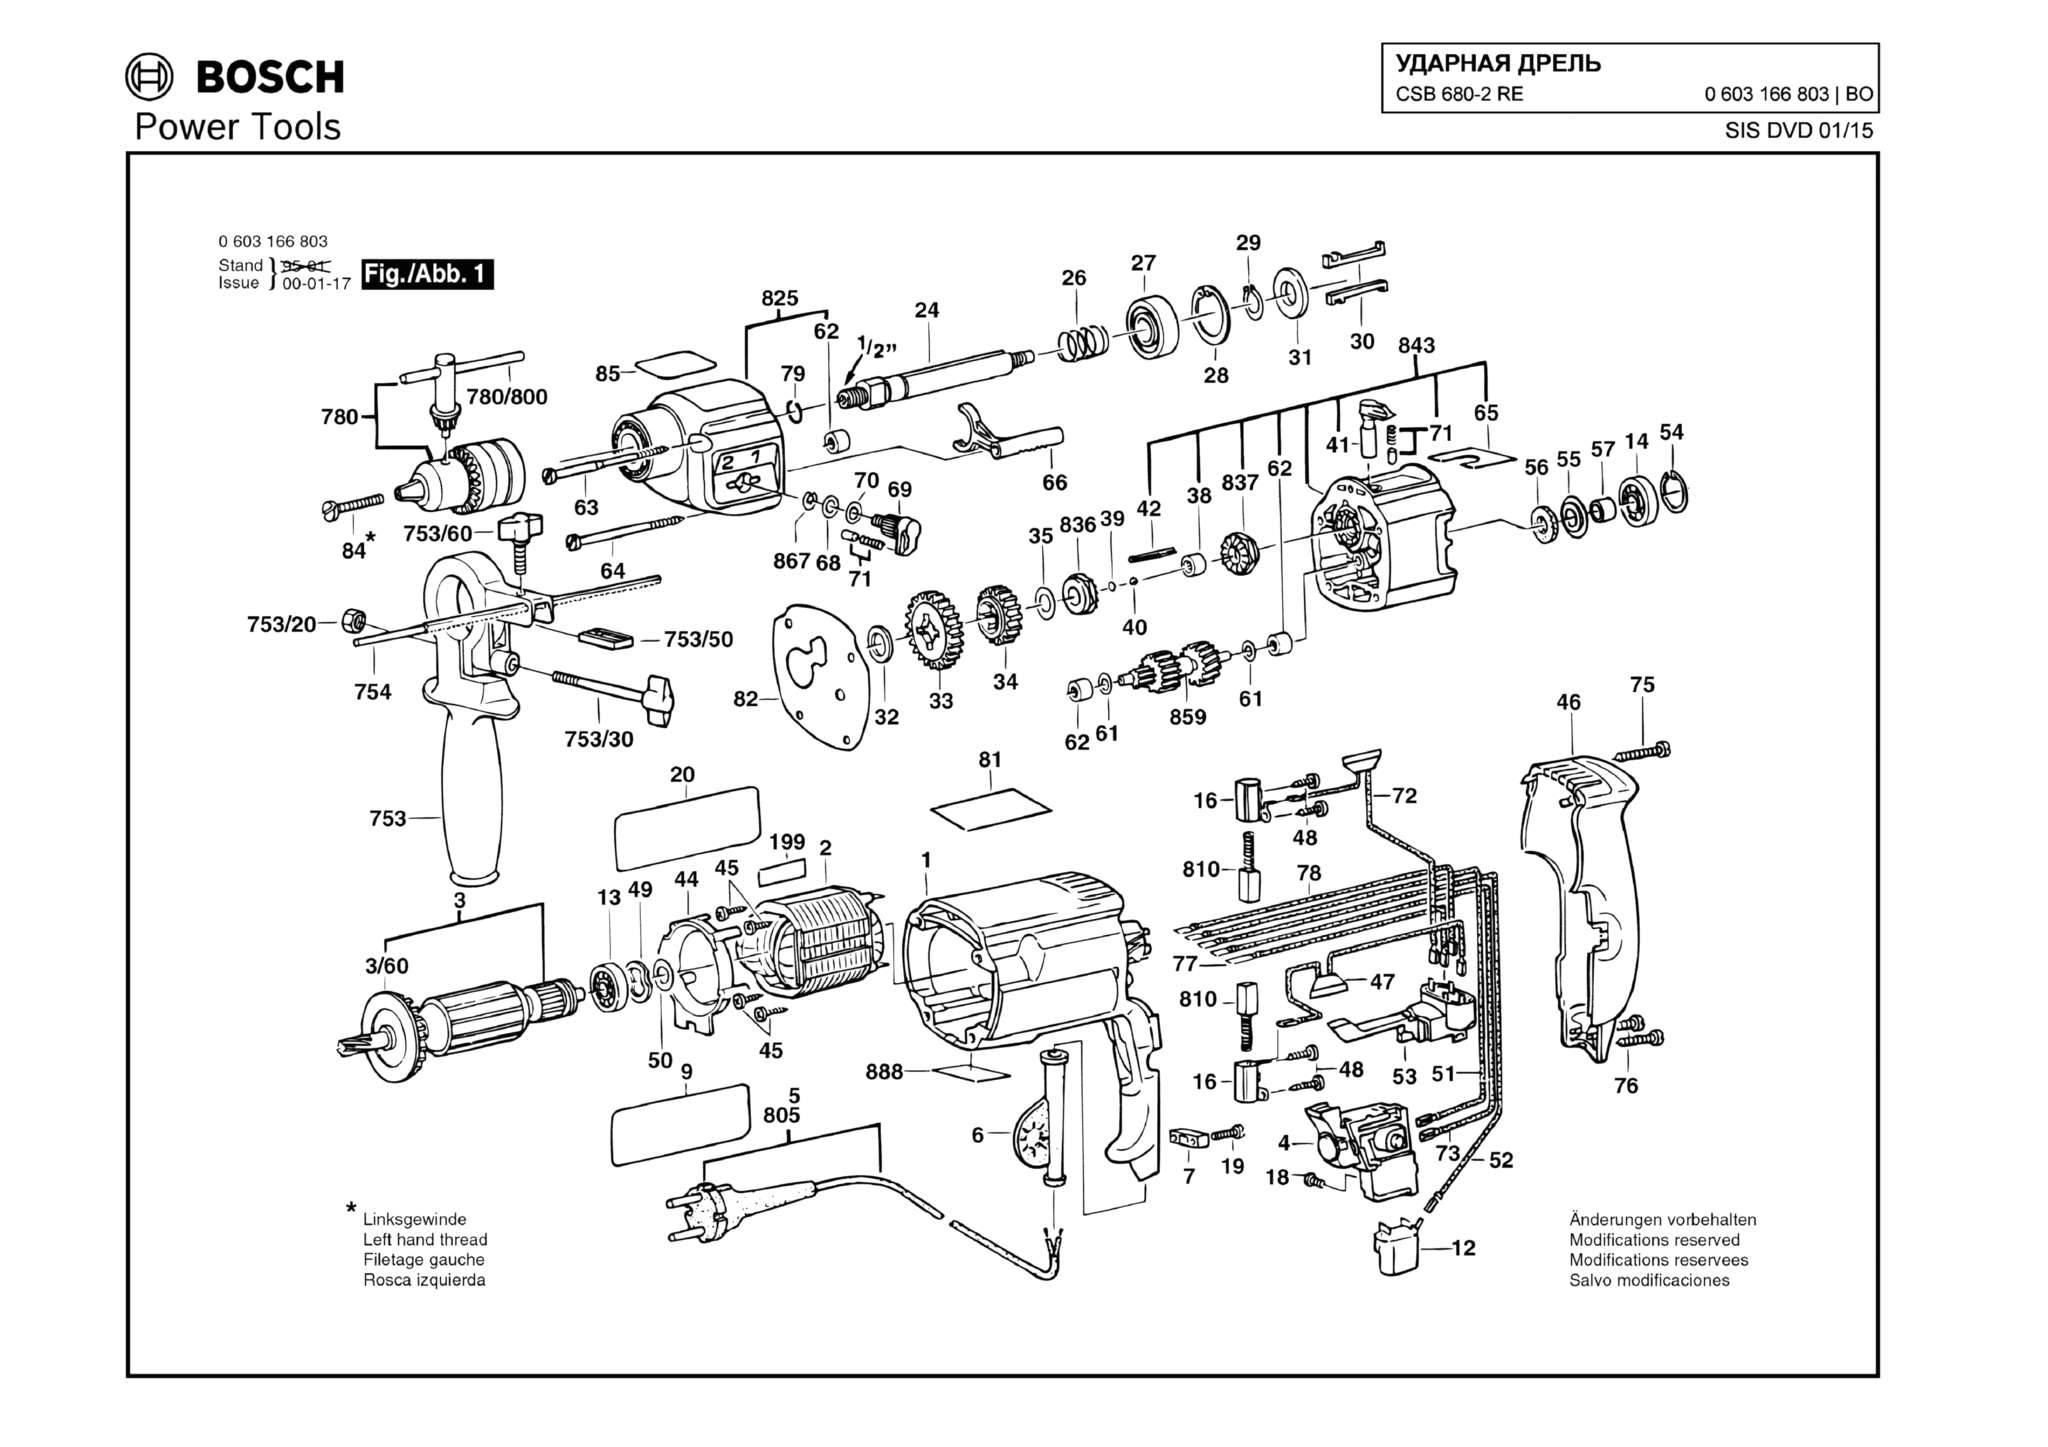 Запчасти, схема и деталировка Bosch CSB 680-2 RE (ТИП 0603166803)